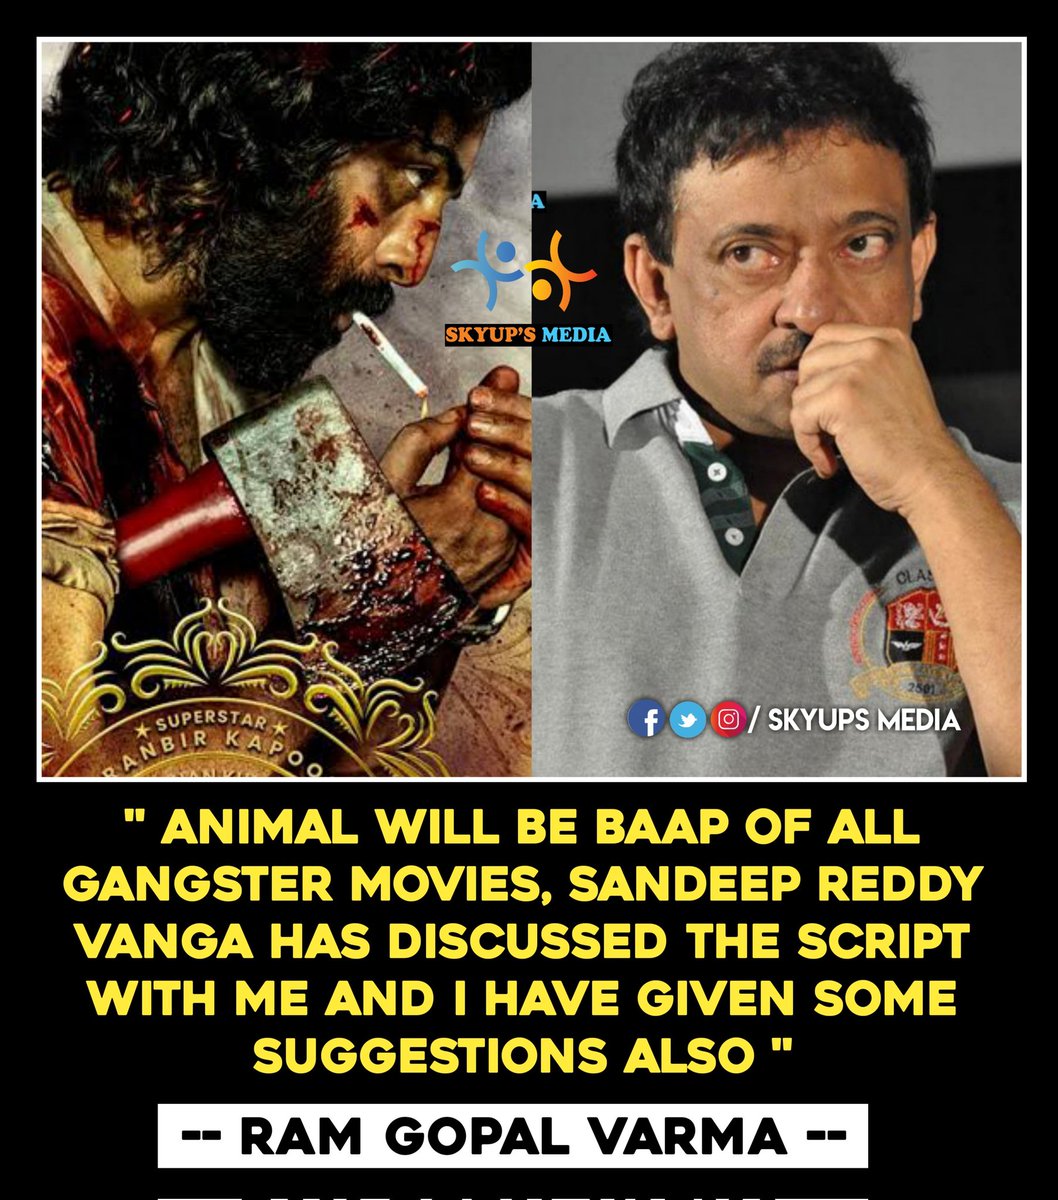 #RamGopalVarma About #Animal 

#RanbirKapoor𓃵 #SandeepReddyVanga